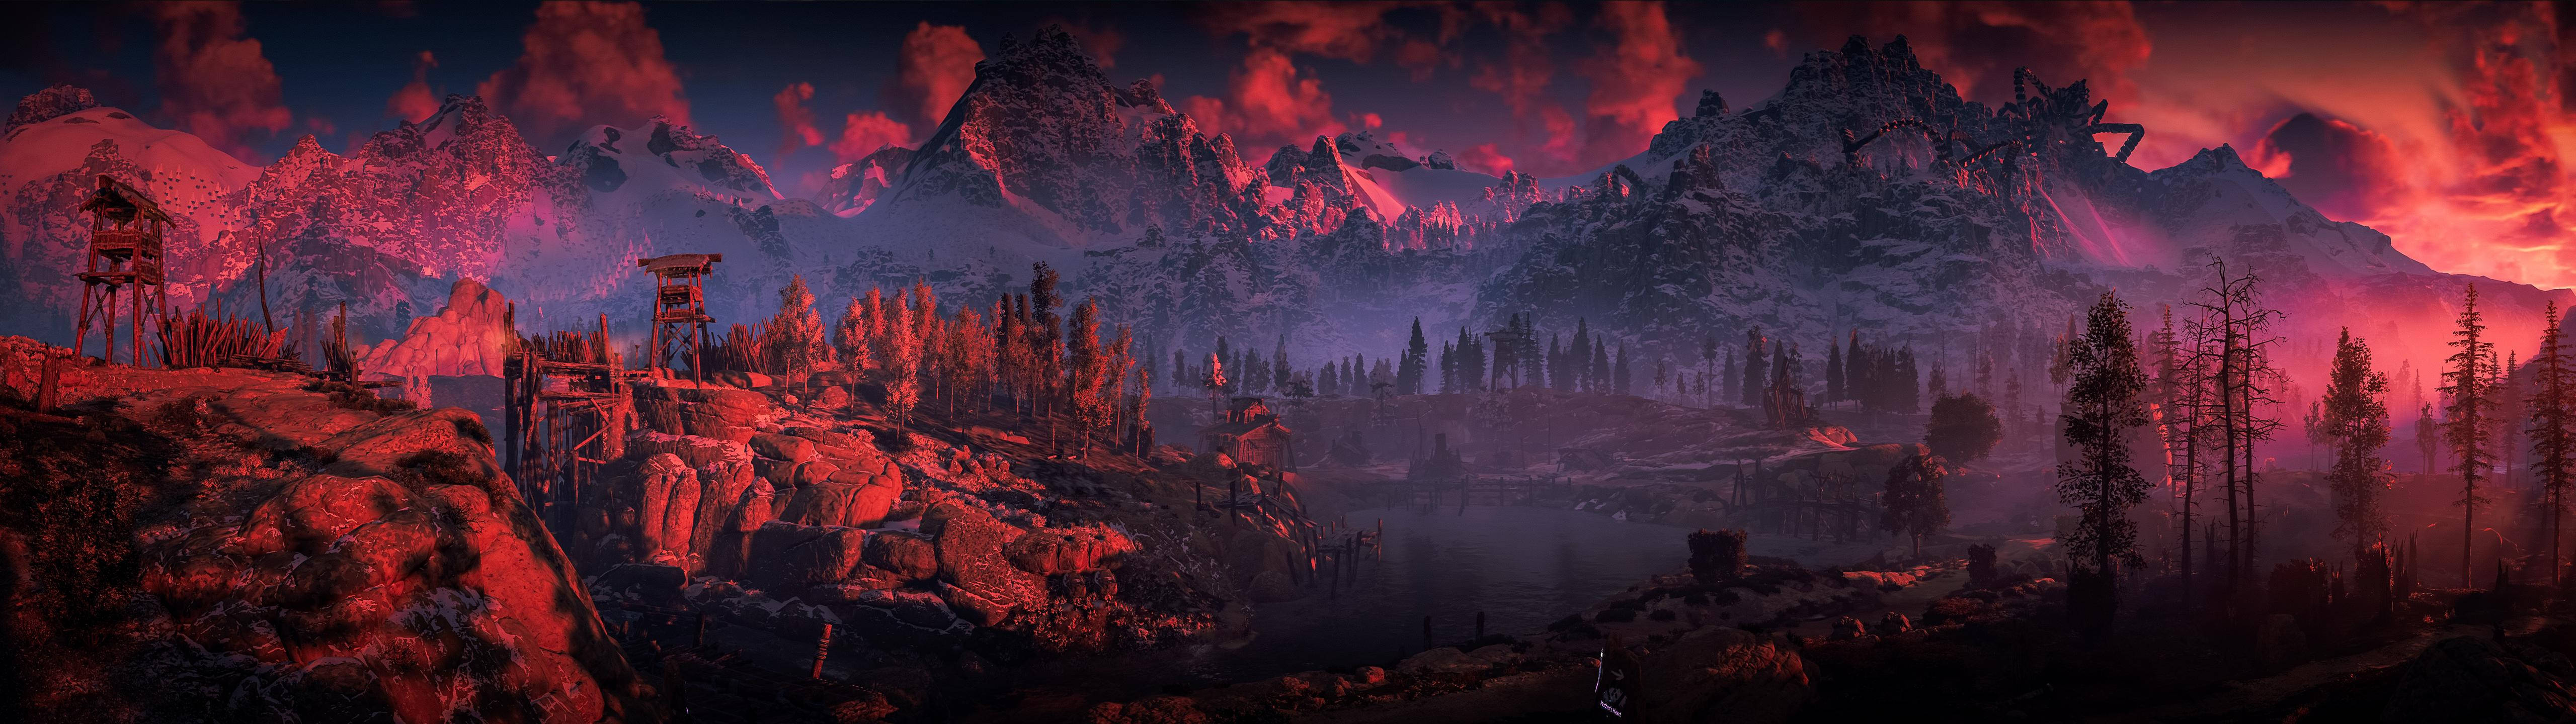 Horizon Zero Dawn: Bạn đã sẵn sàng khám phá một thế giới hoang dã hoàn toàn mới trong game Horizon Zero Dawn? Cùng nhau điểm qua các hình ảnh đẹp của trò chơi này, từ những cánh rừng màu vàng cho đến những cánh đồng rộng lớn.